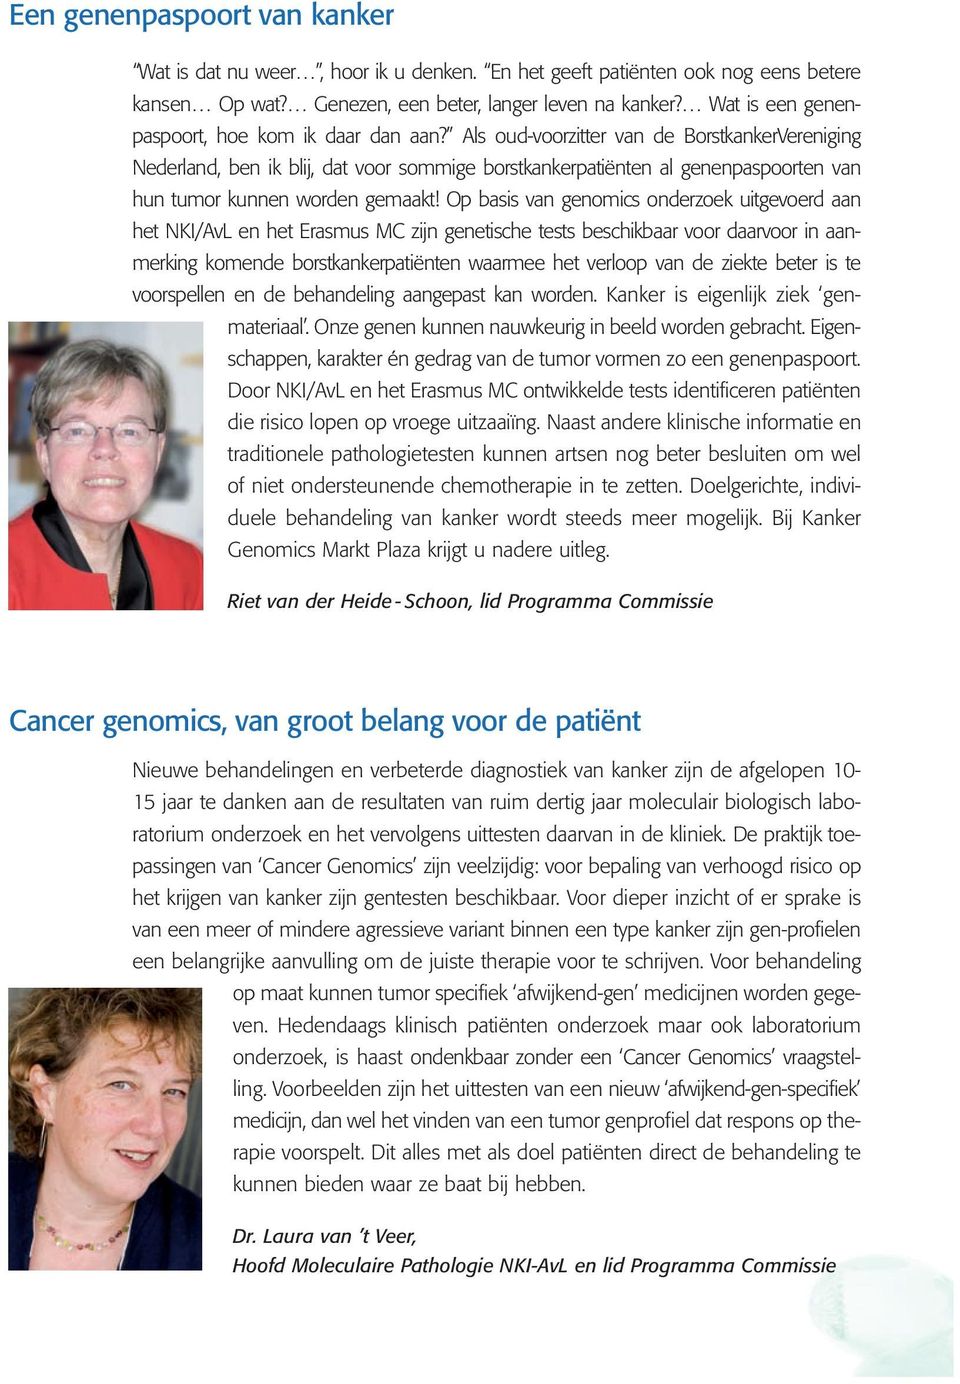 Als oud-voorzitter van de BorstkankerVereniging Nederland, ben ik blij, dat voor sommige borstkankerpatiënten al genenpaspoorten van hun tumor kunnen worden gemaakt!